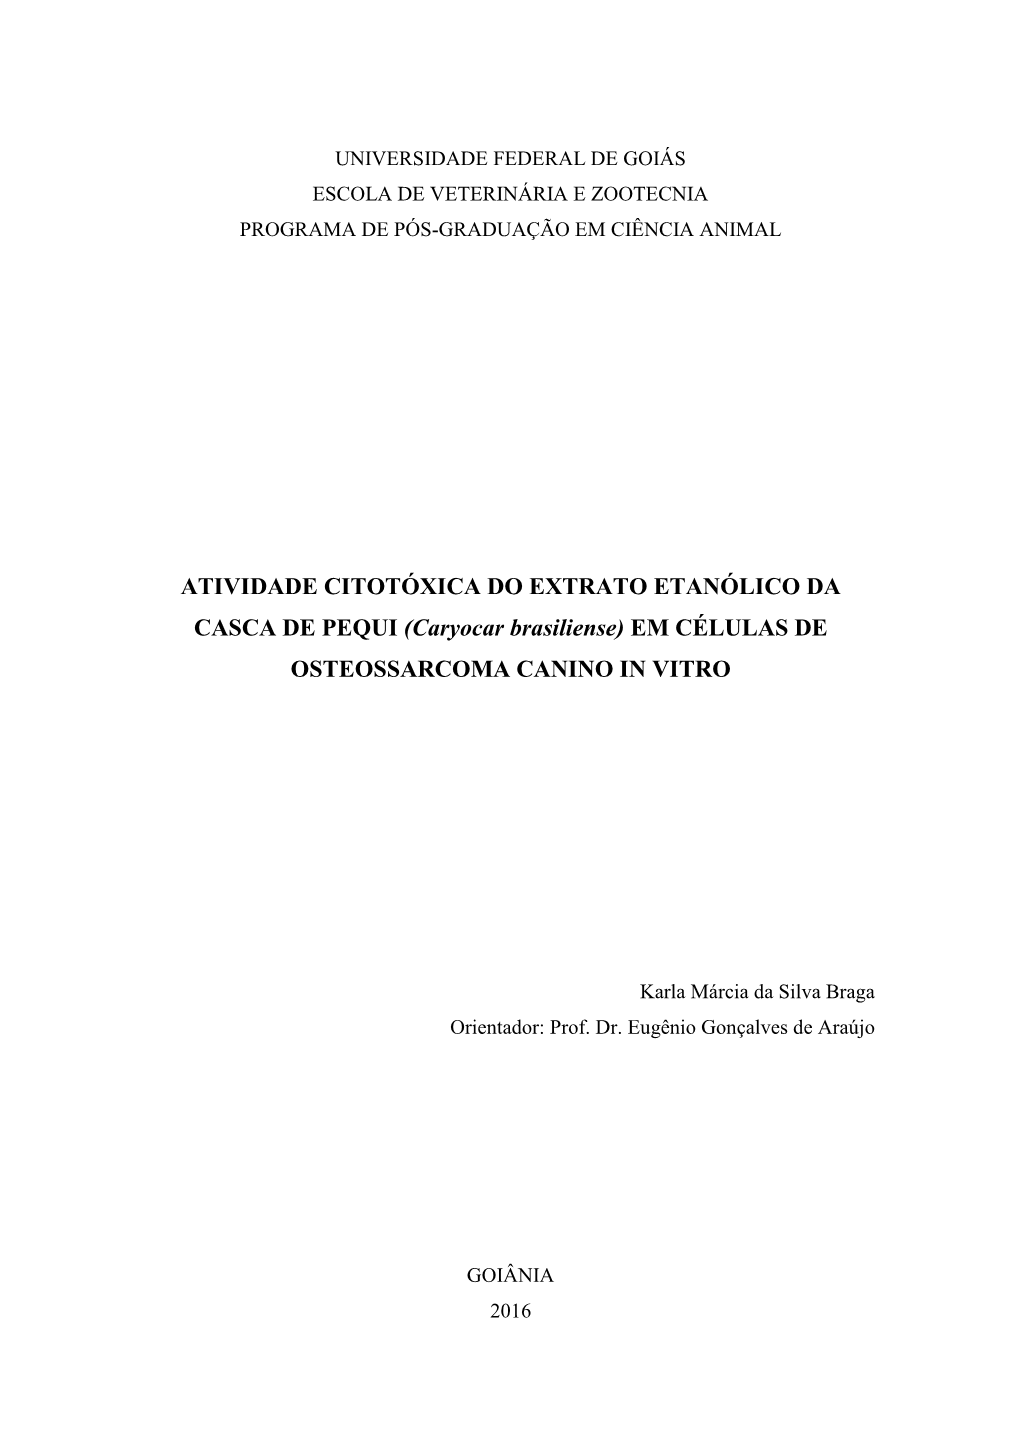 ATIVIDADE CITOTÓXICA DO EXTRATO ETANÓLICO DA CASCA DE PEQUI (Caryocar Brasiliense) EM CÉLULAS DE OSTEOSSARCOMA CANINO in VITRO